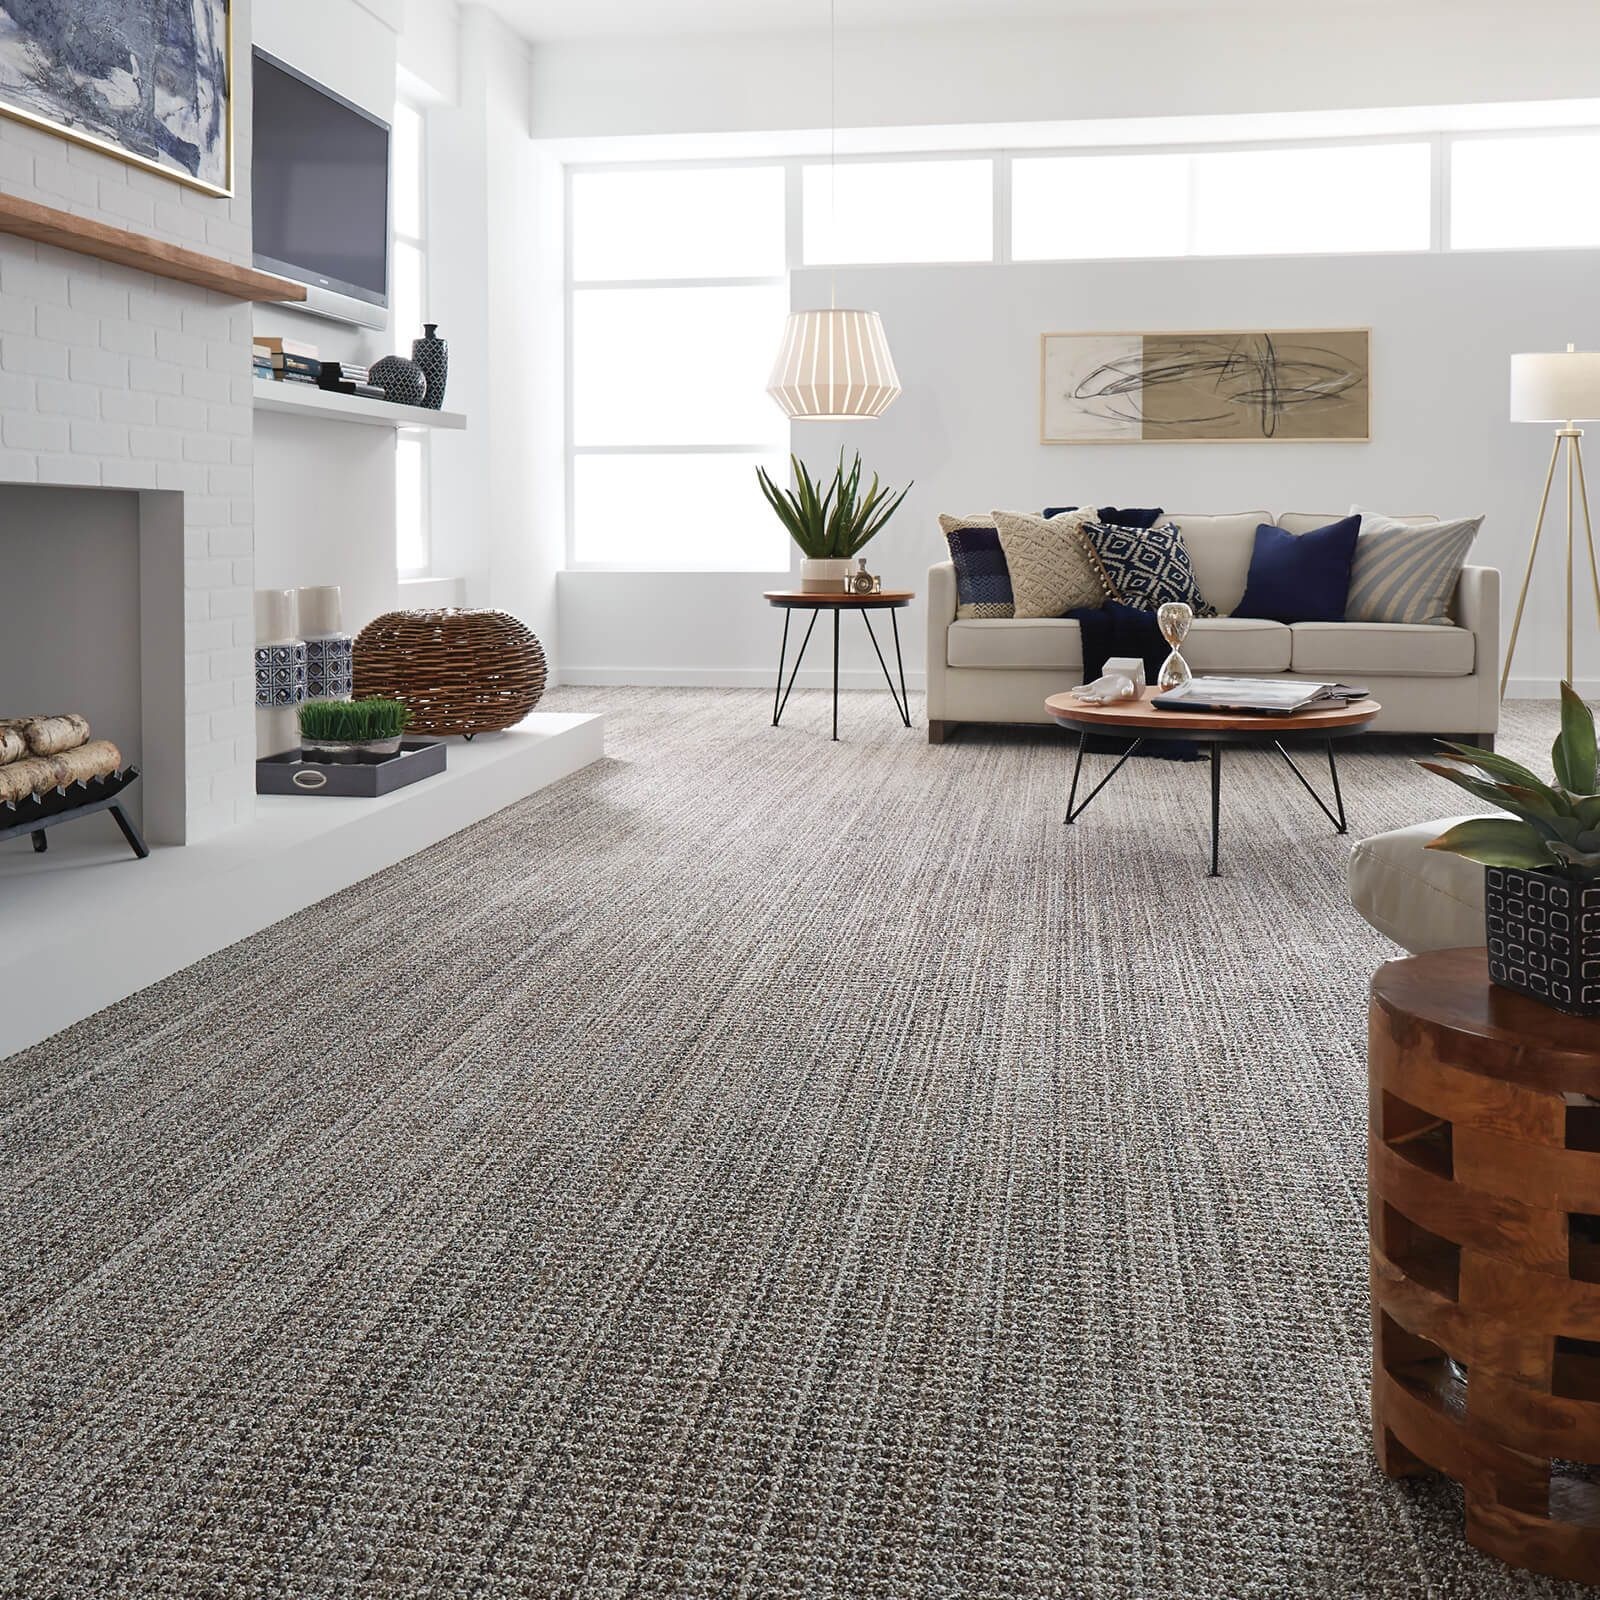 Living room carpet | The Flooring Center